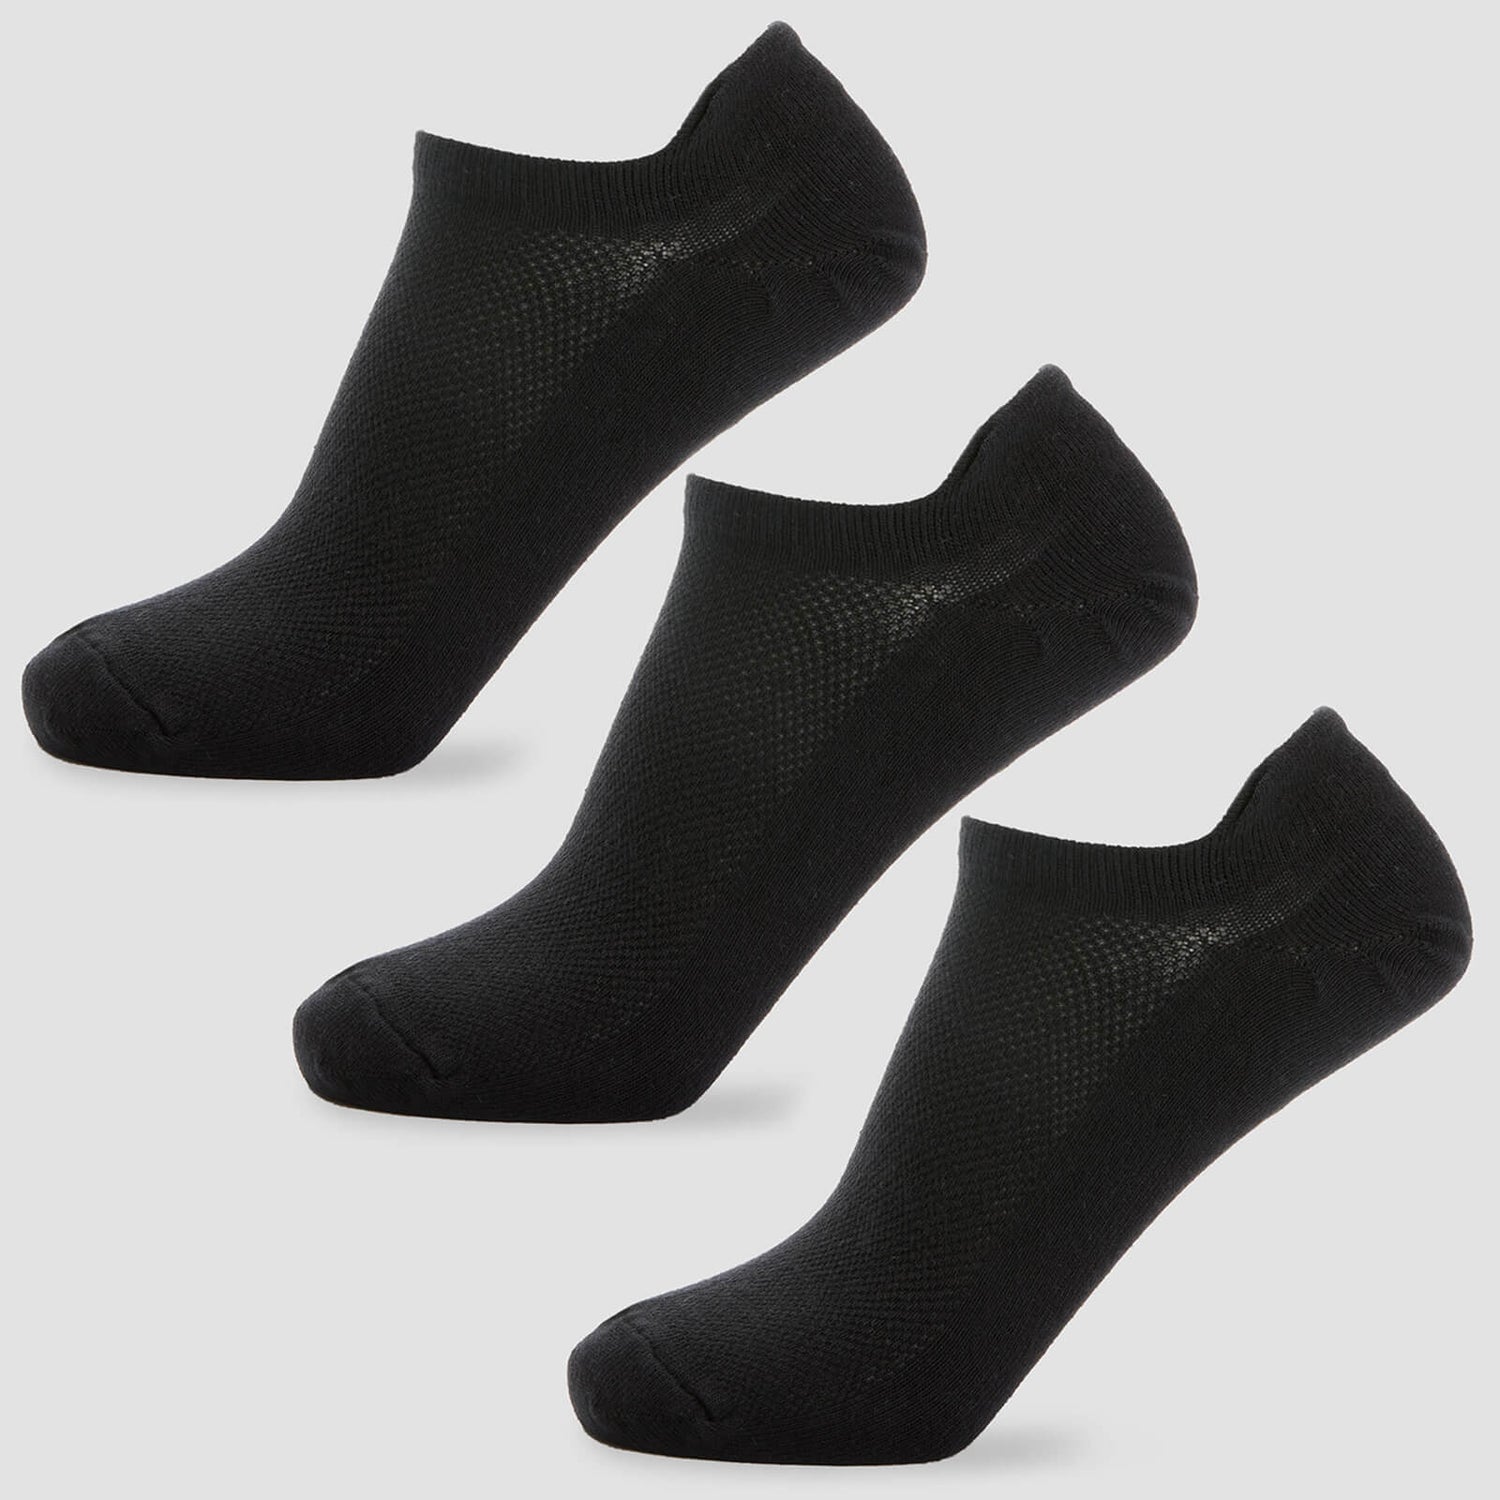 Miesten Ankle Socks - Musta - UK 6-8